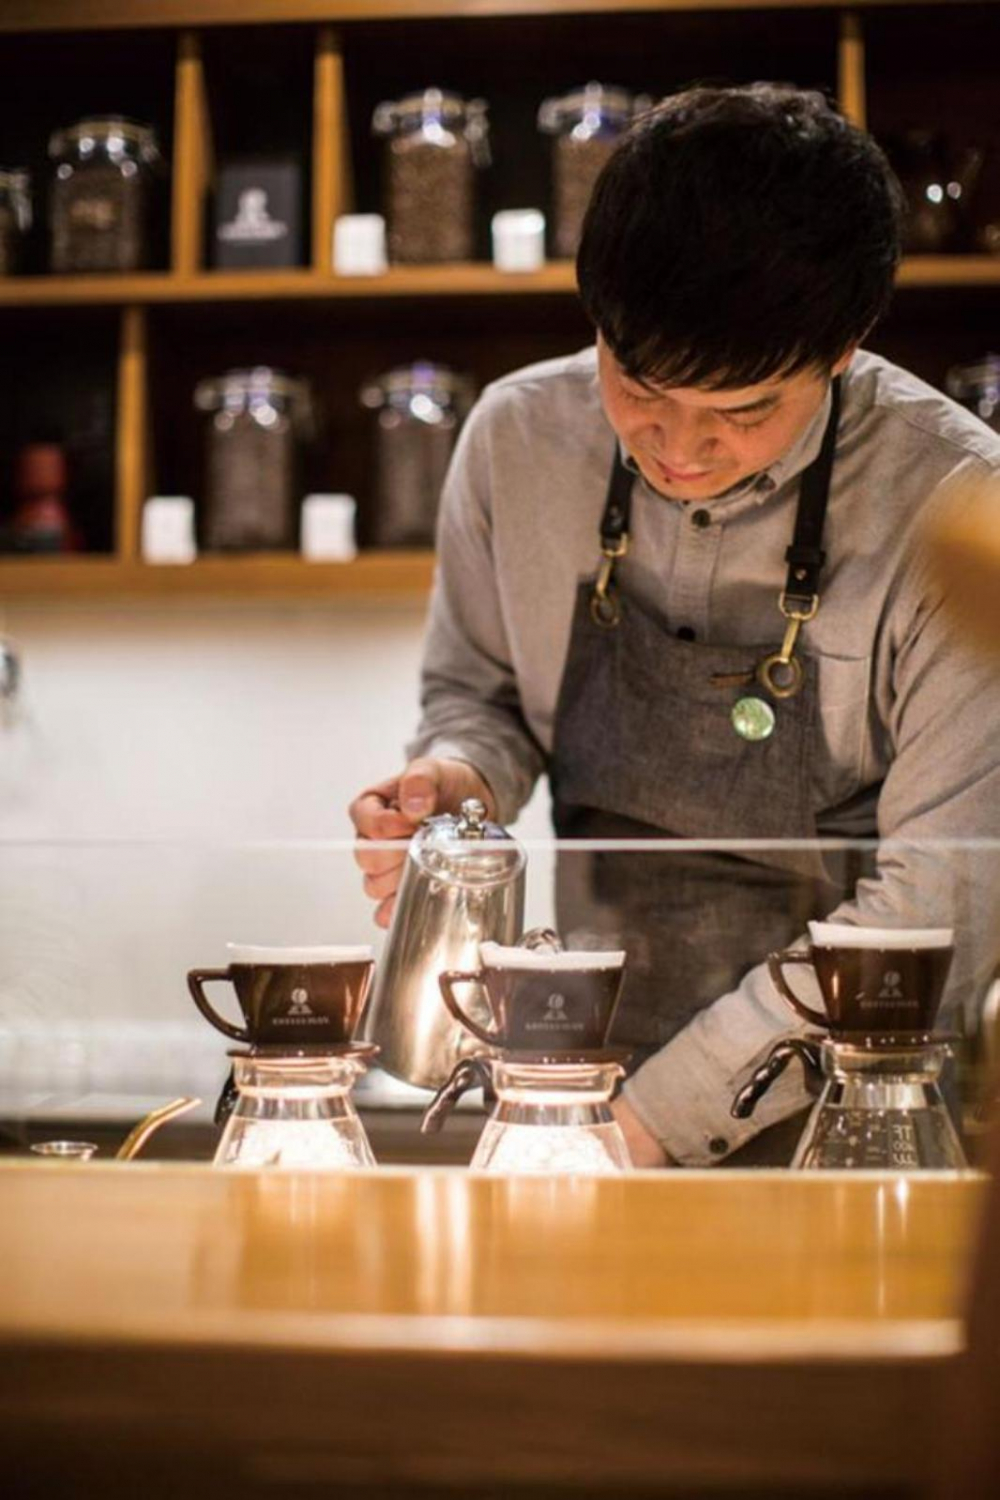 Eguchi-san setiap harinya juga melakukan penyaringan kopi, karena ingin menjadi “coffee man” dalam artian luas